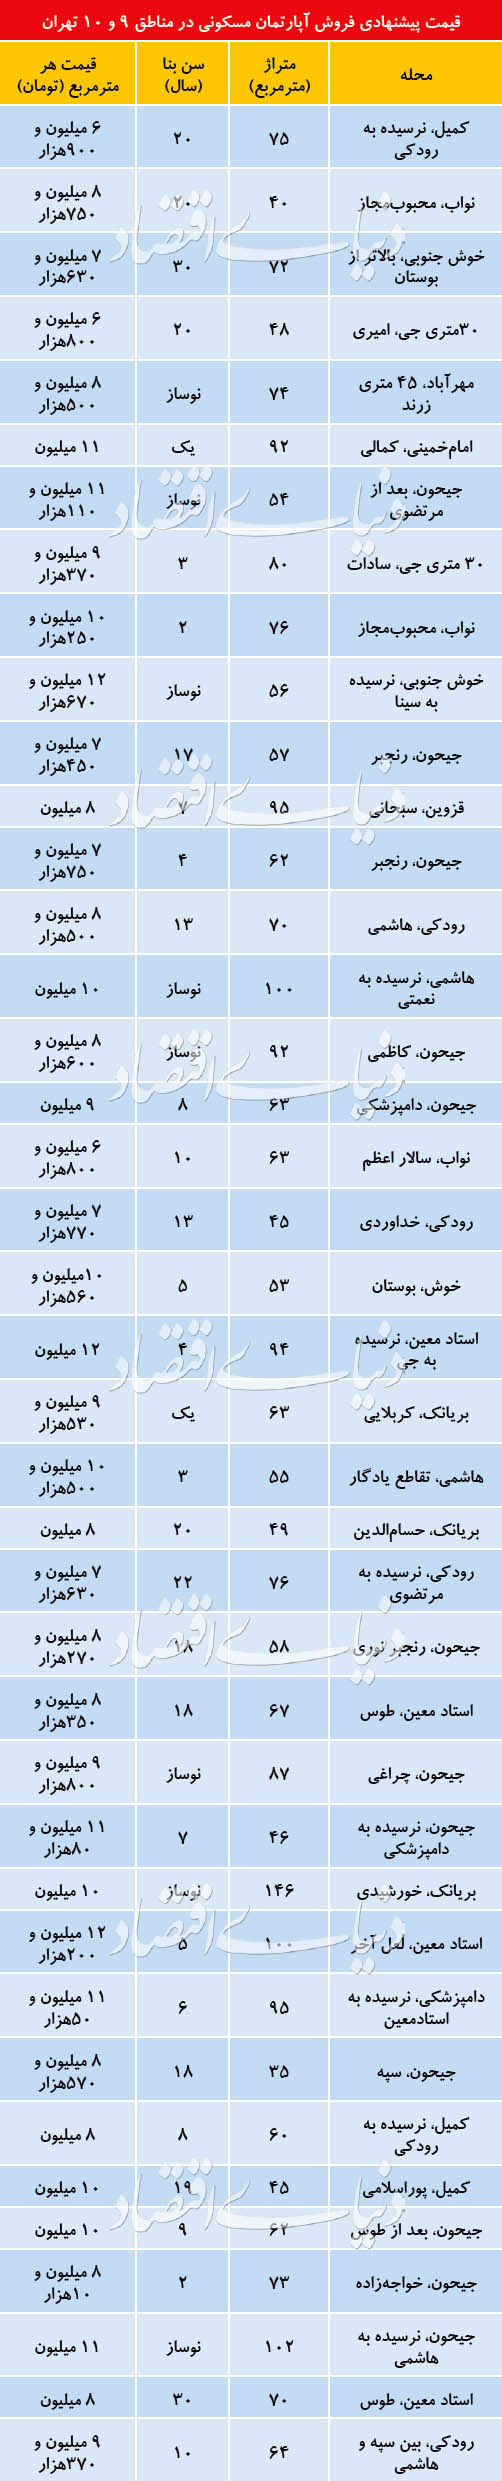 قیمت آپارتمان در منطقه ۹ و ۱۰ تهران